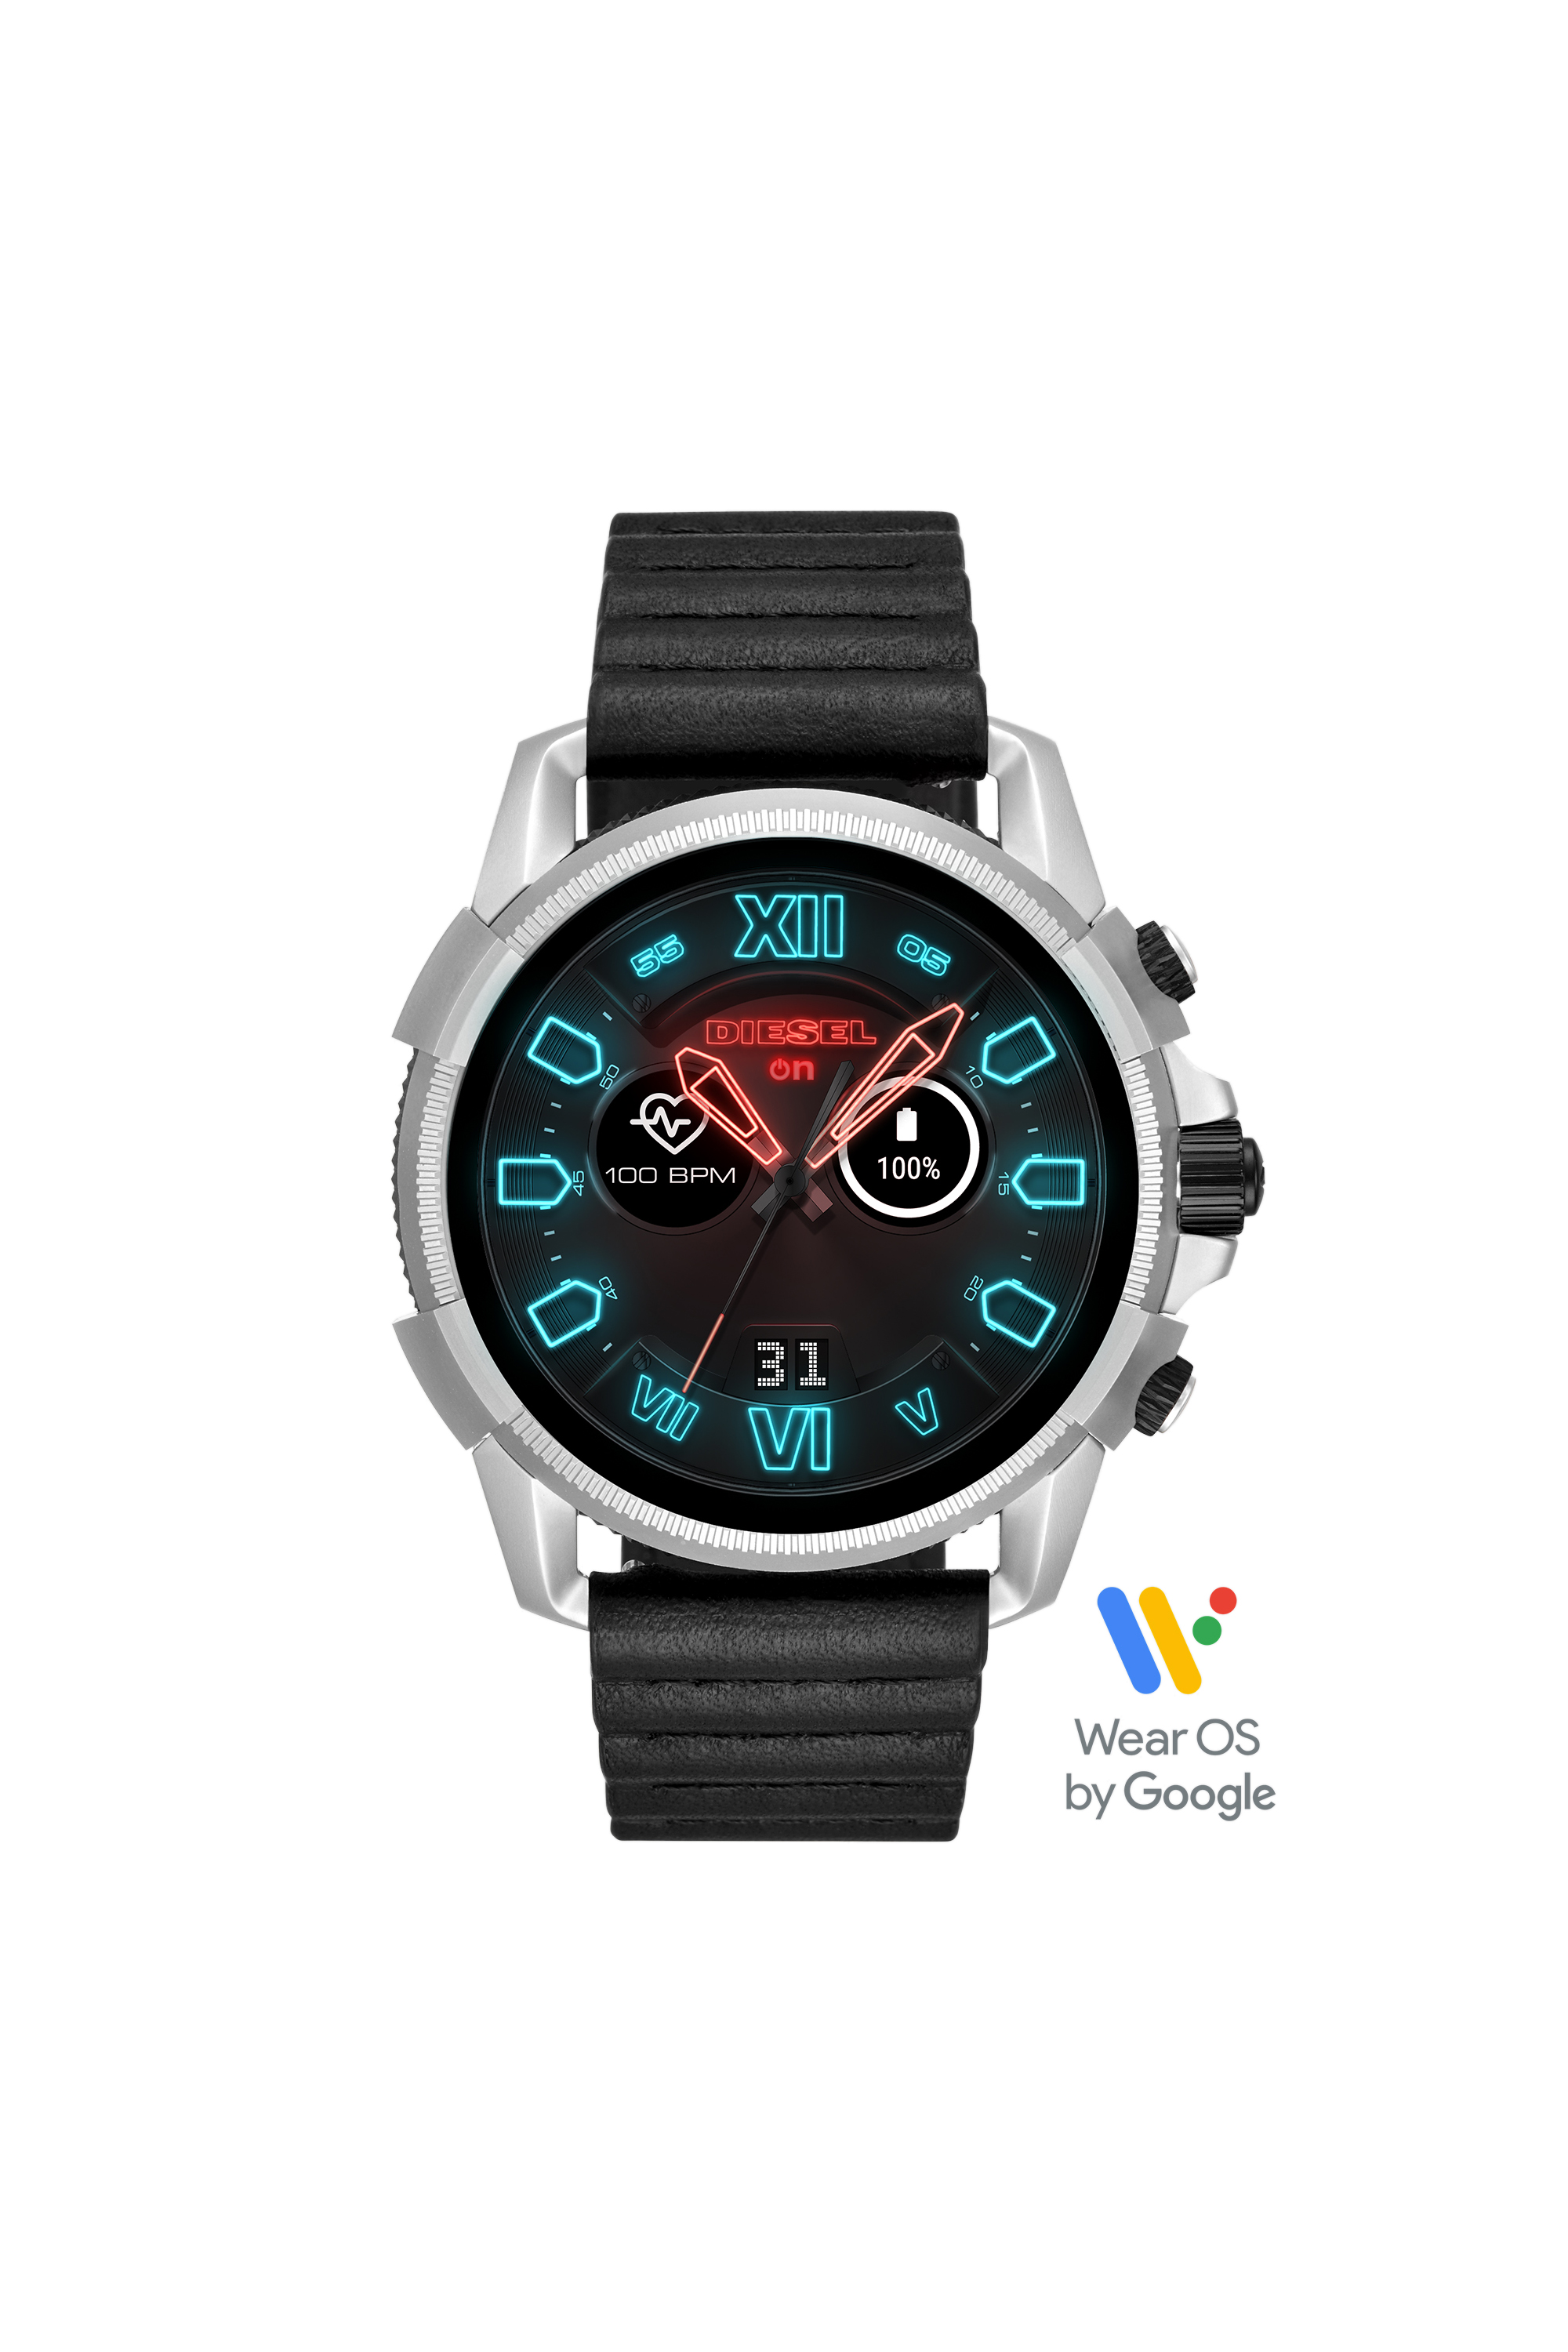 Afwijken doorgaan met Labe Diesel Men's Smartwatches: Full Guard | Diesel.com